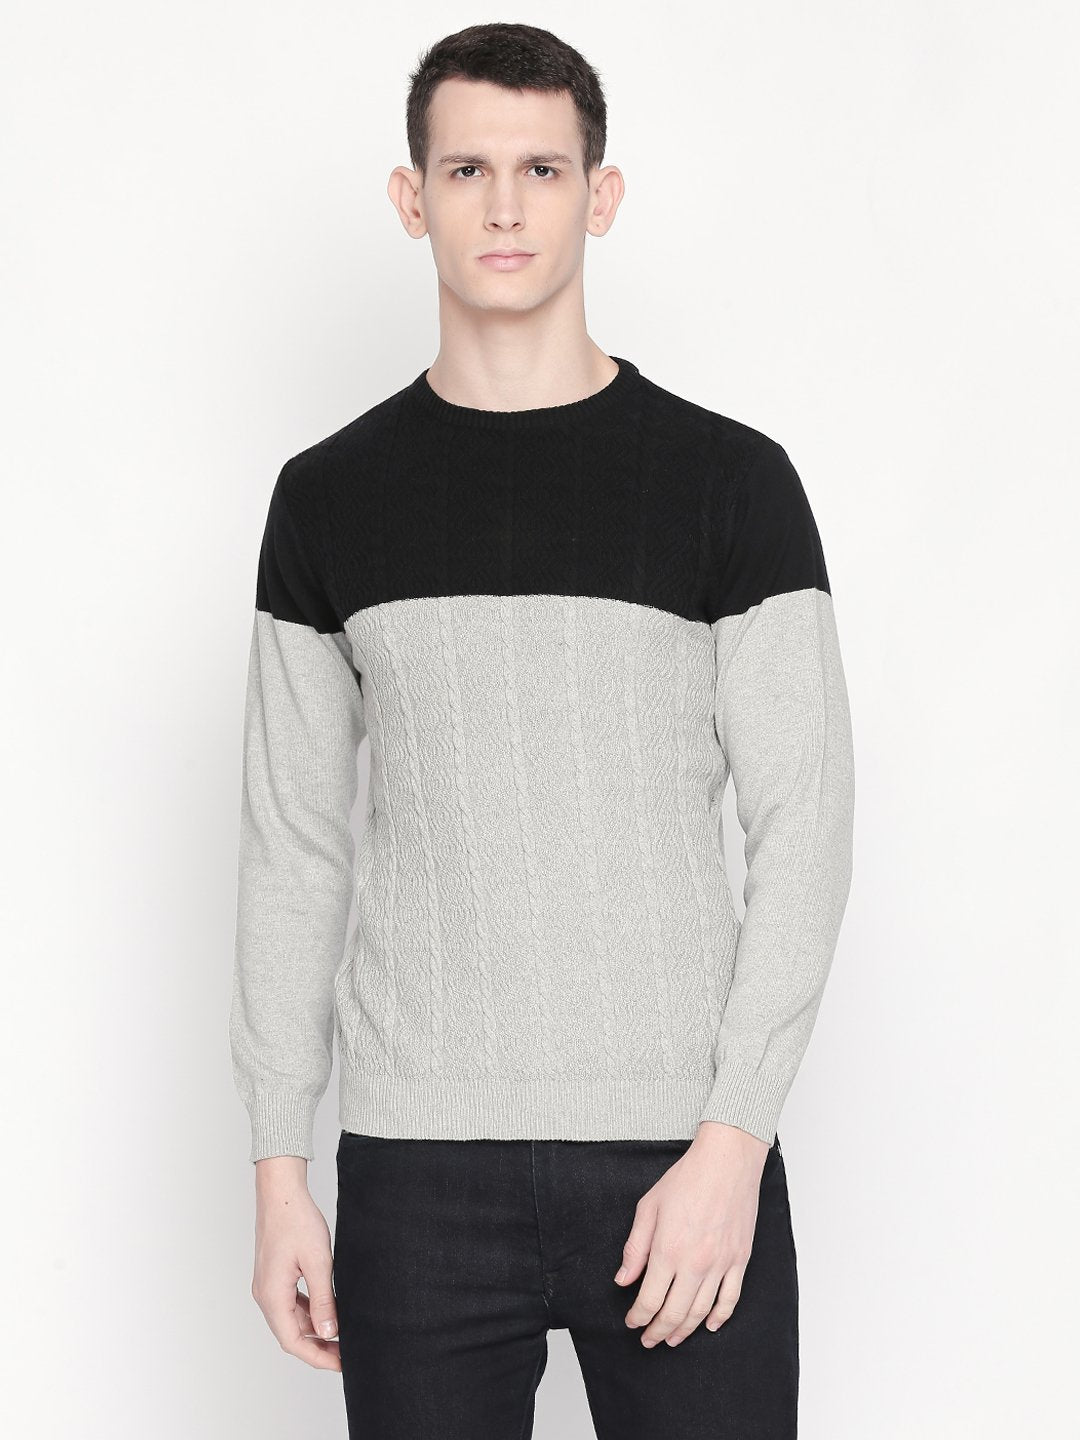 Black Sweater For Men 